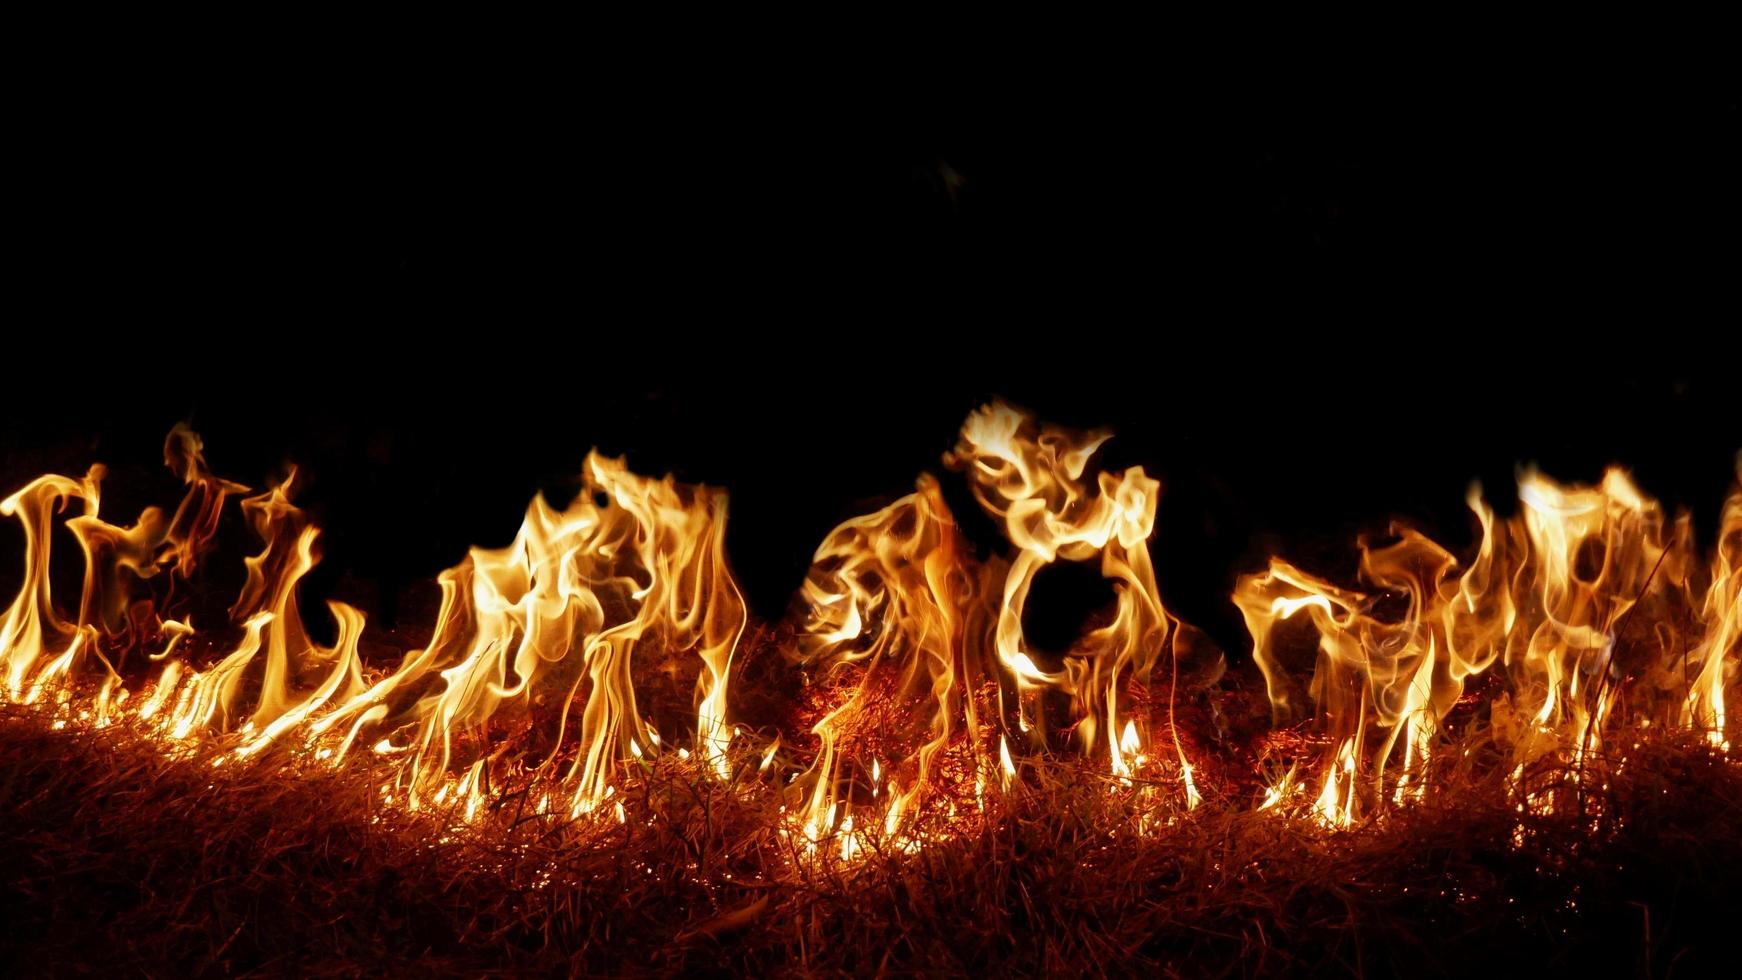 incendies de meules de foin la nuit dans les zones arides, les cendres ont éclaté et le vent était très dangereux. cendres rouges comme l'enfer. photo